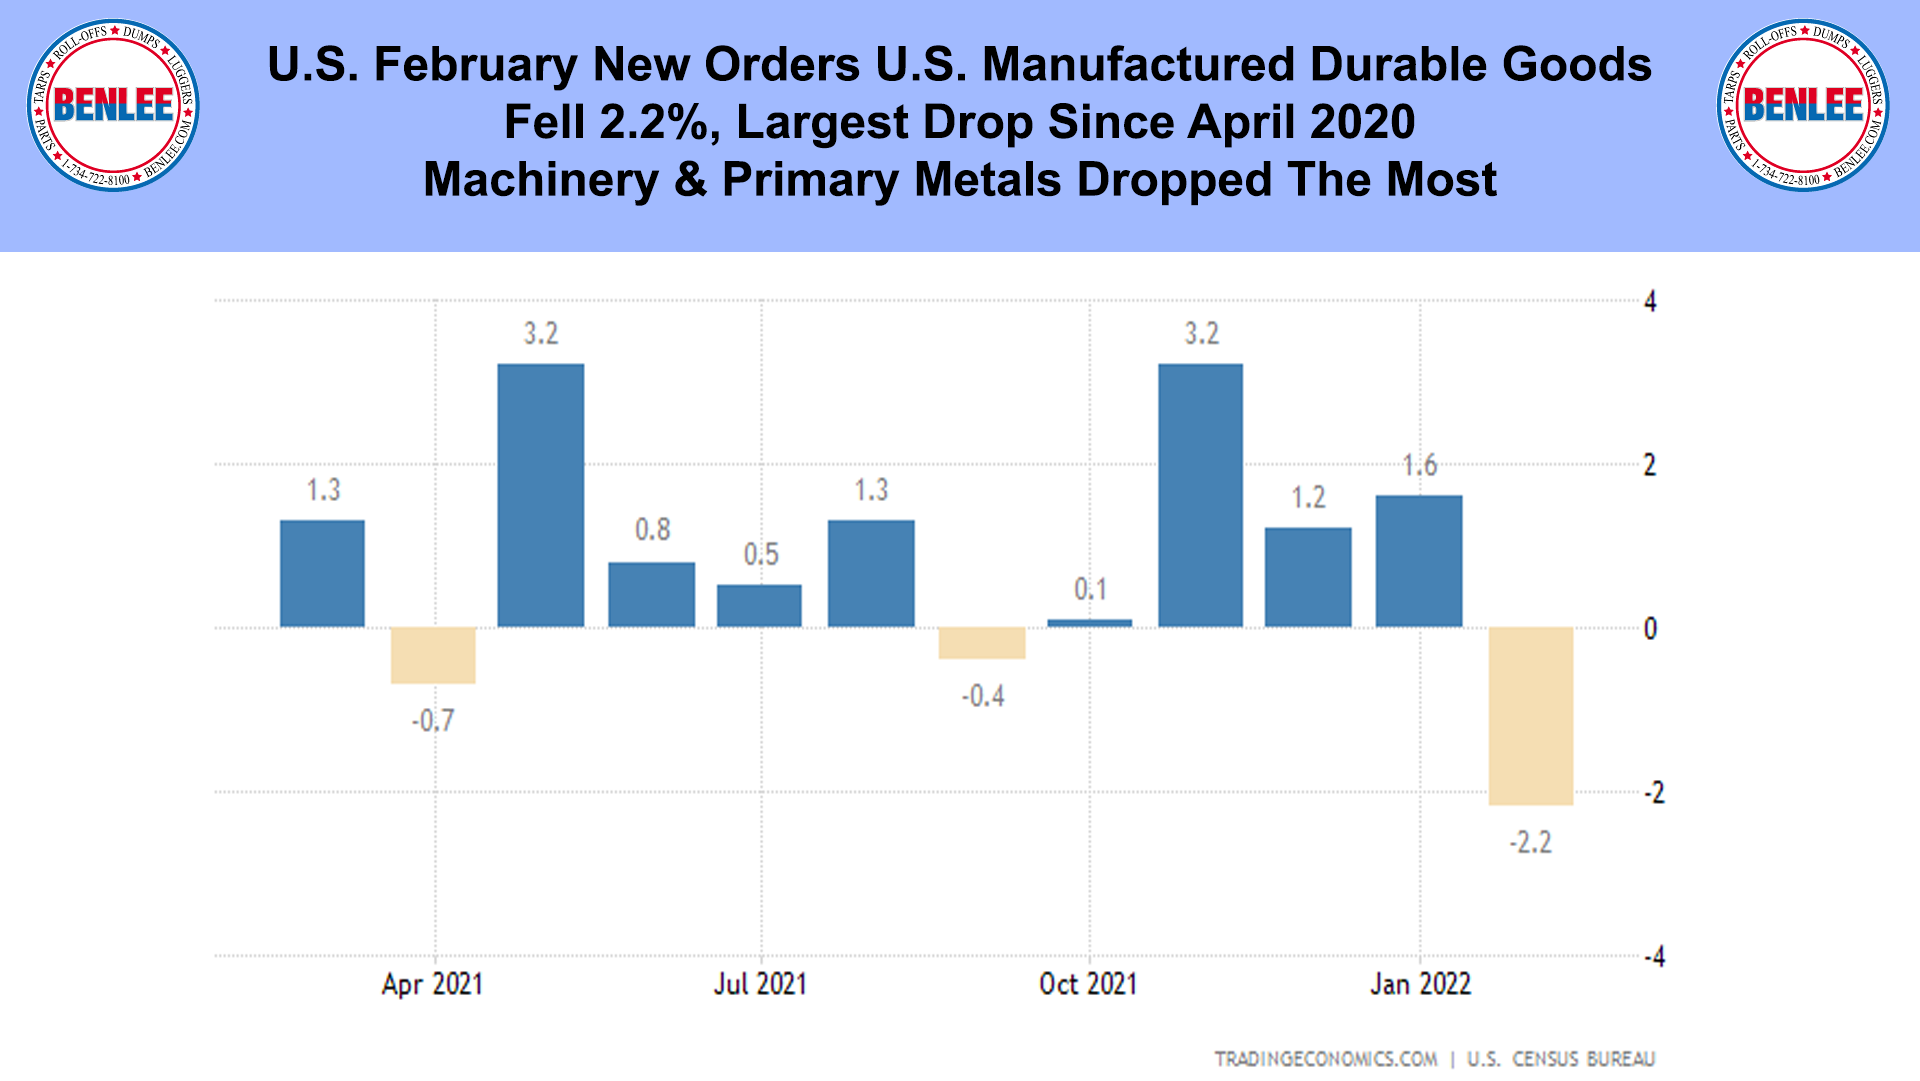 U.S. February New Orders U.S. Manufactured Durable Goods